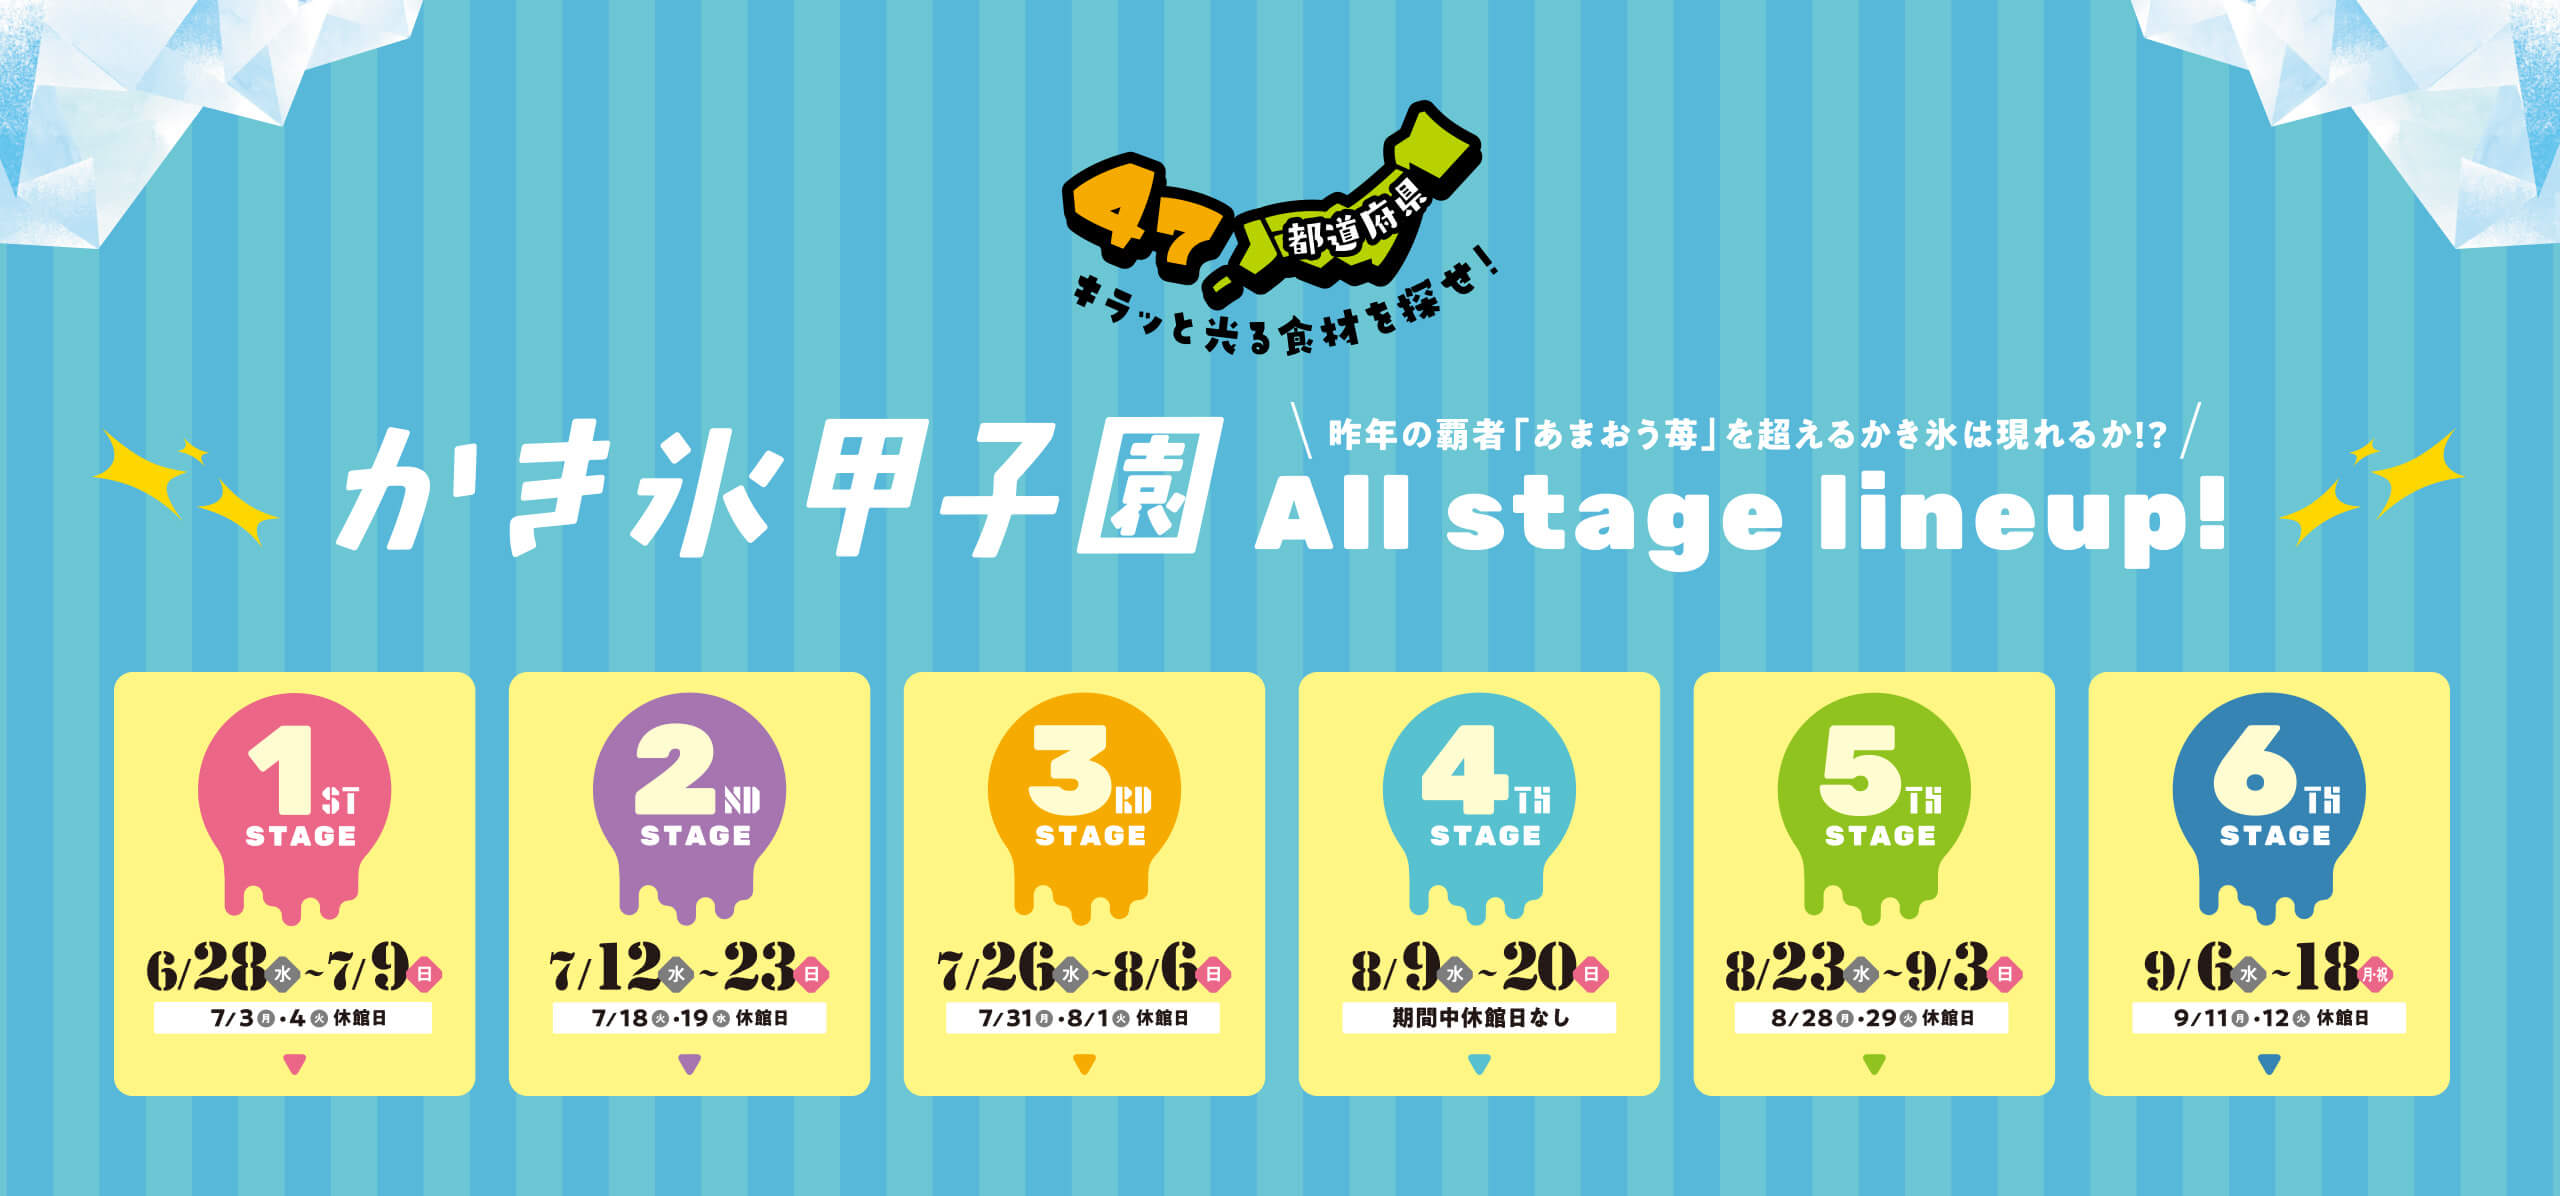 かき氷甲子園 All stage lineup